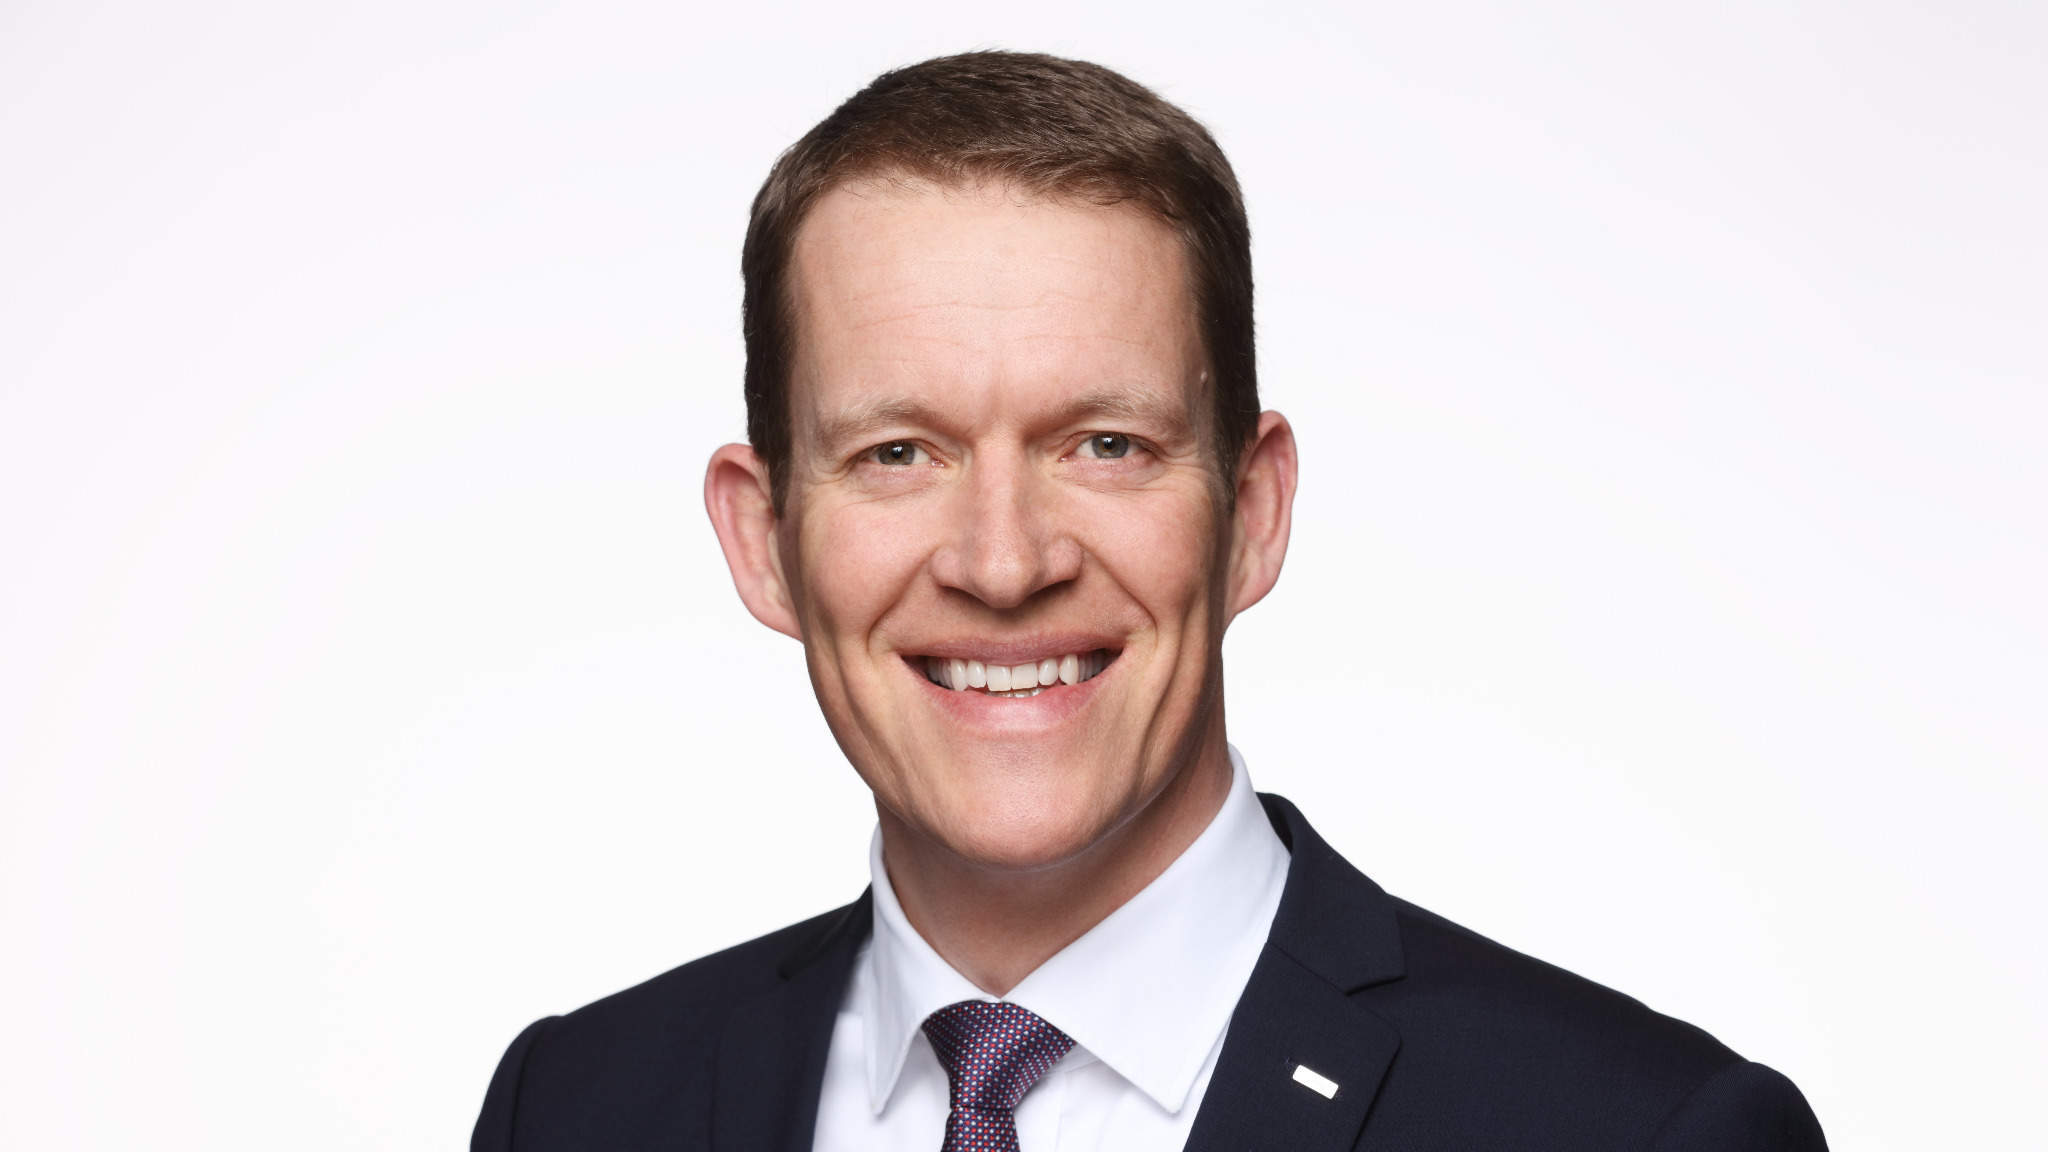 Burkhard Eling ist seit Januar 2021 der neue CEO von DACHSER.